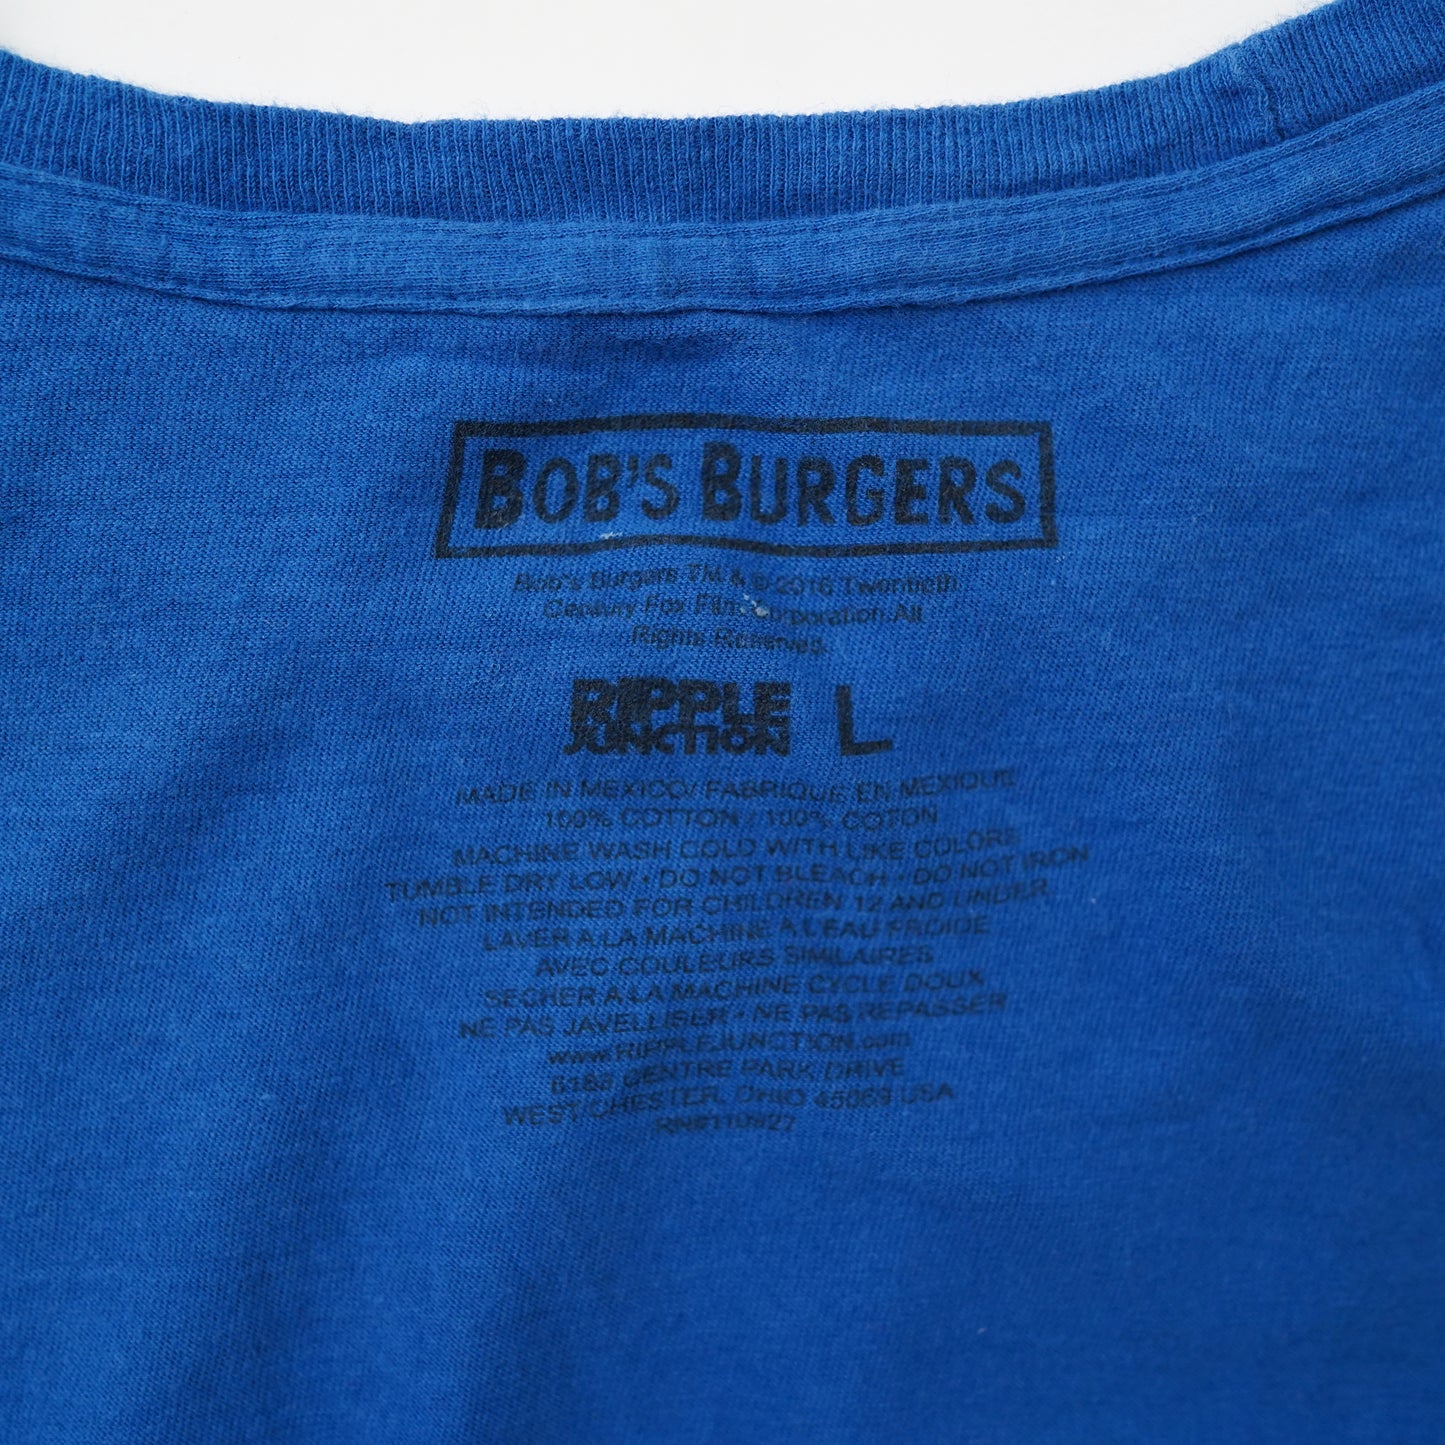 Bobs burger tee